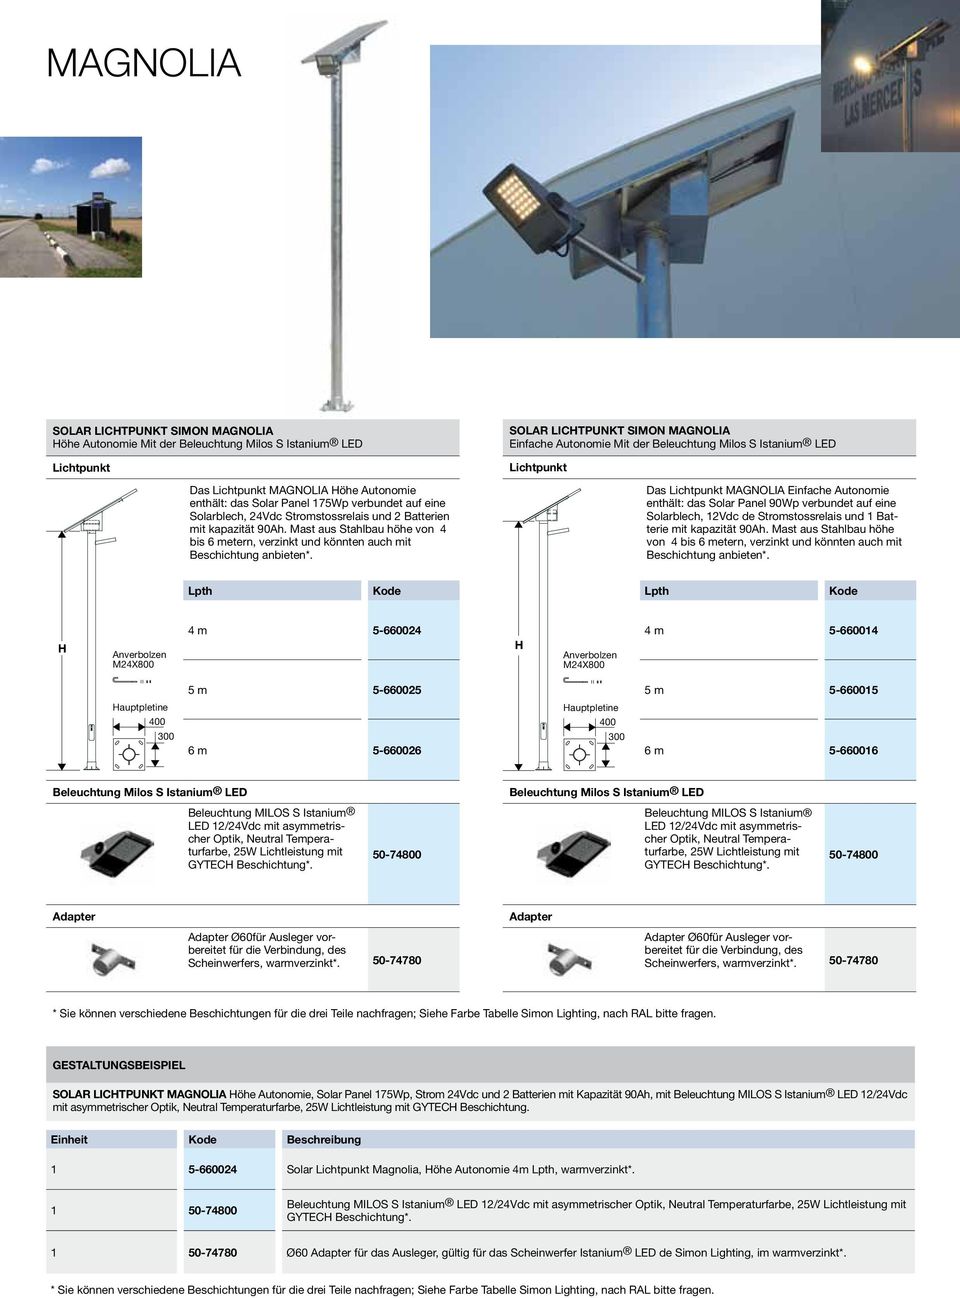 Einfache Autonomie Mit der Beleuchtung Milos S Istanium LED Das MAGNOLIA Einfache Autonomie enthält: das Solar Panel 90Wp verbundet auf eine Solarblech, 12Vdc de Stromstossrelais und 1 Batterie mit 